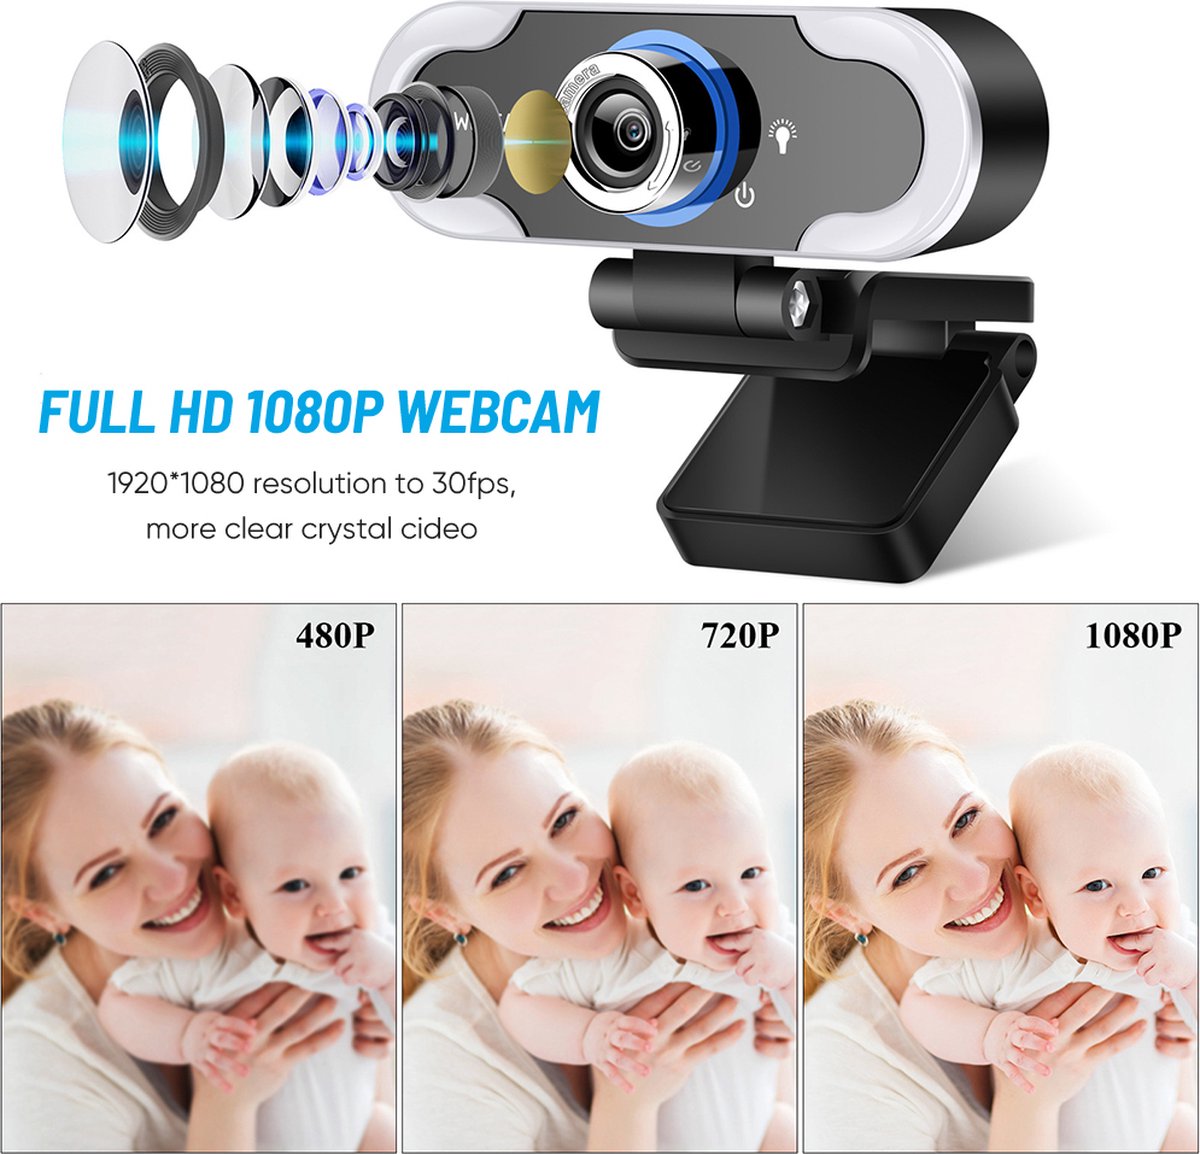 Webcam - Webcam met Microfoon - Full HD - Webcams - Gaming - Webcam voor PC - Plug&Play - Webcam cover - Laptop Camera - Webcam voor Computer - Windows/IO - Teams - Zoom - USB 2.0 - Werk EN thuis